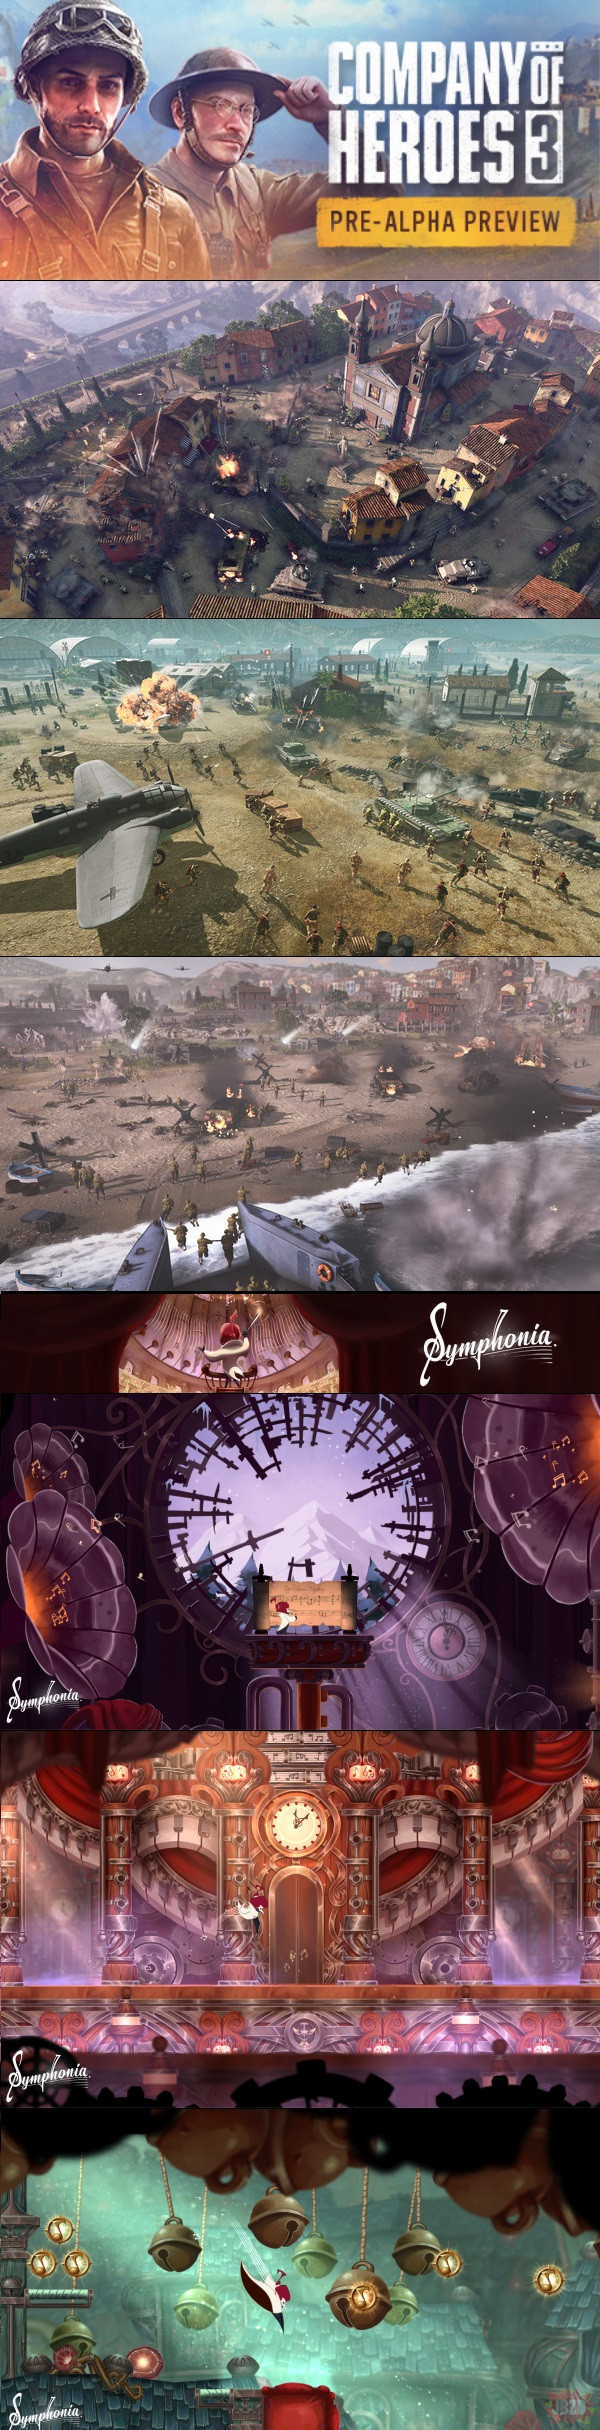 Pre-Alpha Company of Heroes 3 za darmo na Steam oraz Symphonia za darmo na GOG